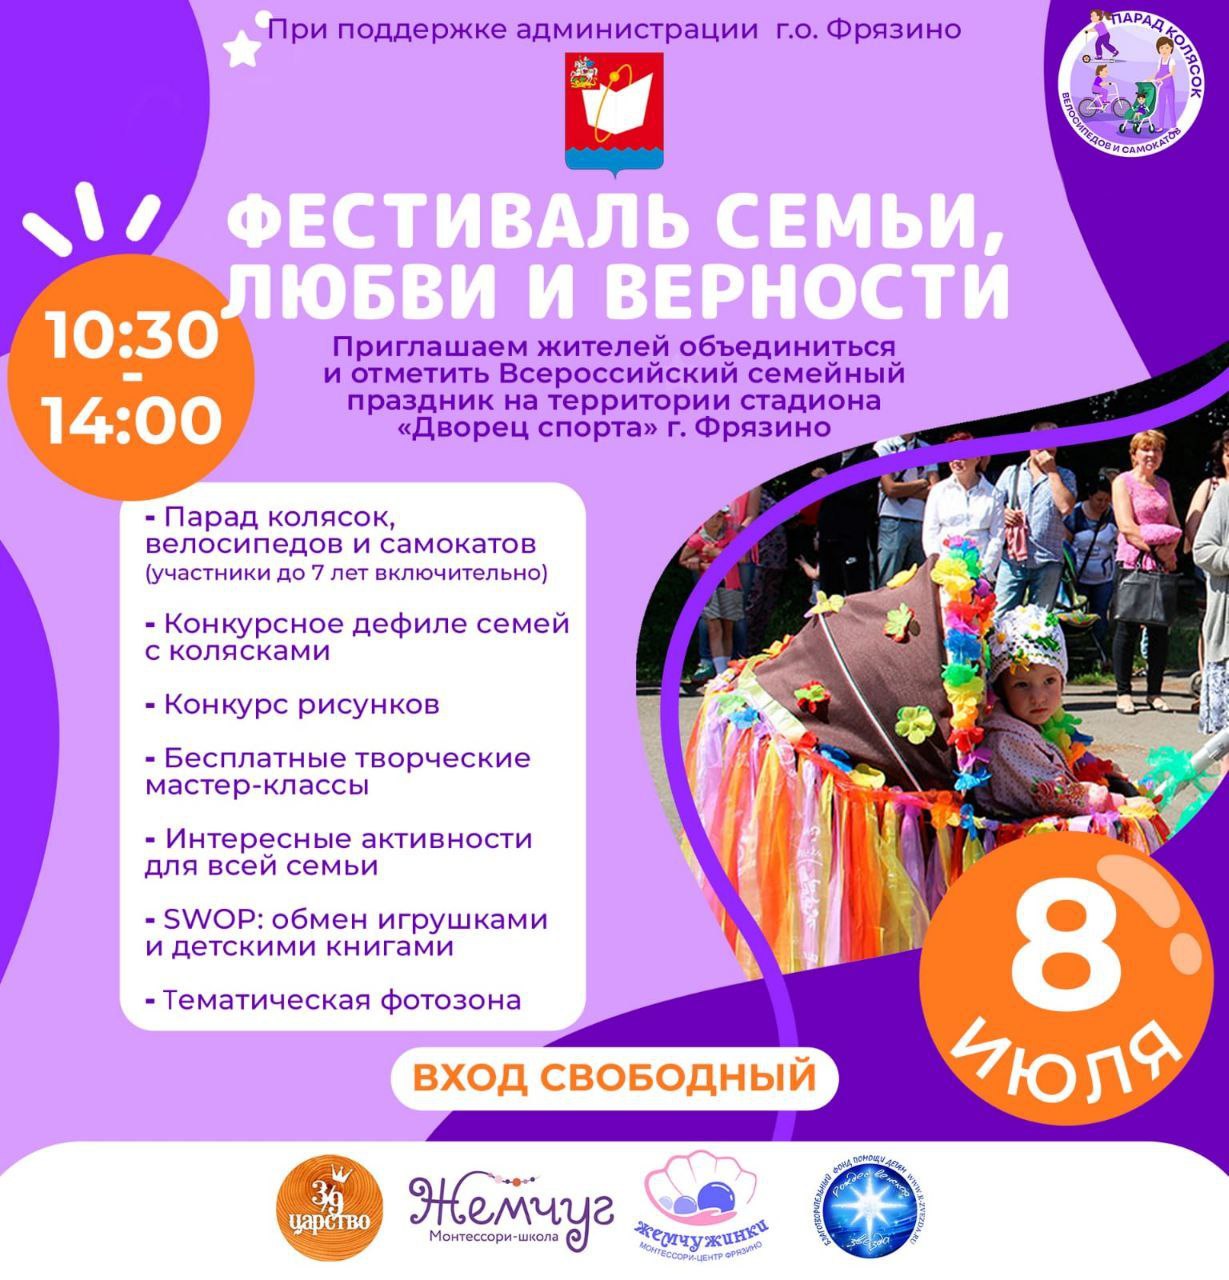 Приглашаем жителей Фрязино 8 июля объединиться и отметить всероссийский семейный праздник в формате «Фестиваля семьи, любви и верности»!